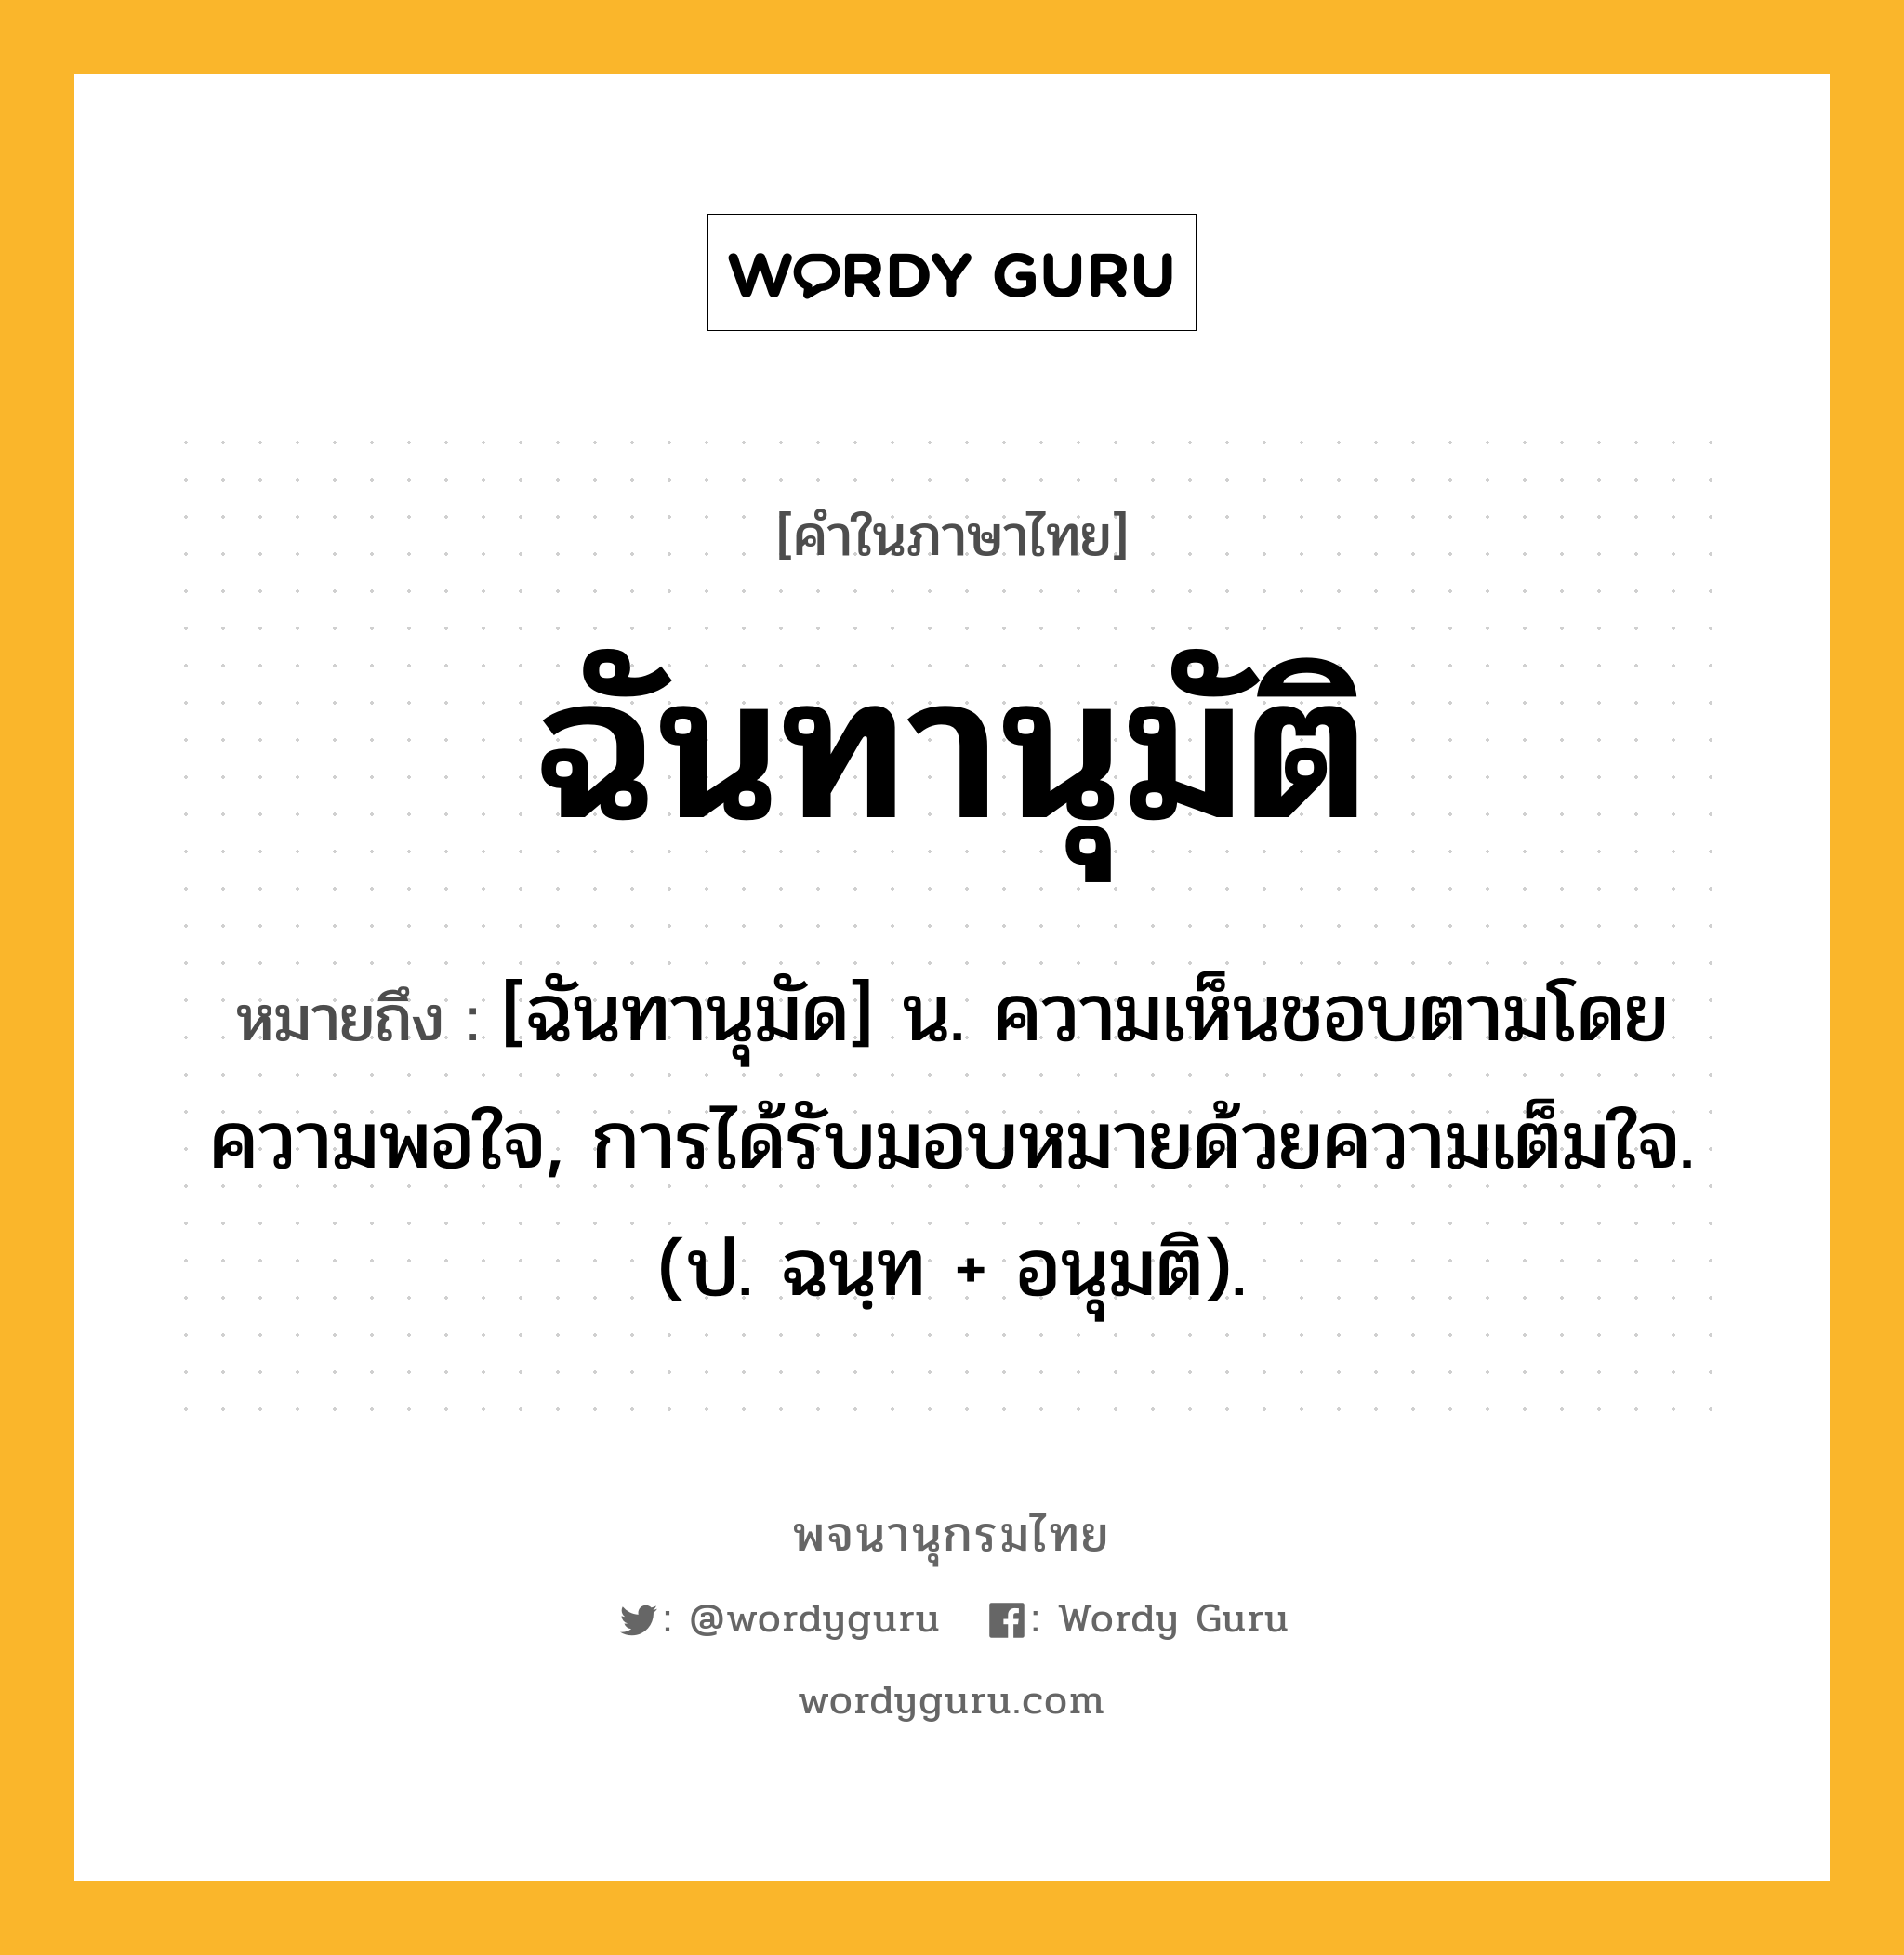 ฉันทานุมัติ หมายถึงอะไร?, คำในภาษาไทย ฉันทานุมัติ หมายถึง [ฉันทานุมัด] น. ความเห็นชอบตามโดยความพอใจ, การได้รับมอบหมายด้วยความเต็มใจ. (ป. ฉนฺท + อนุมติ).